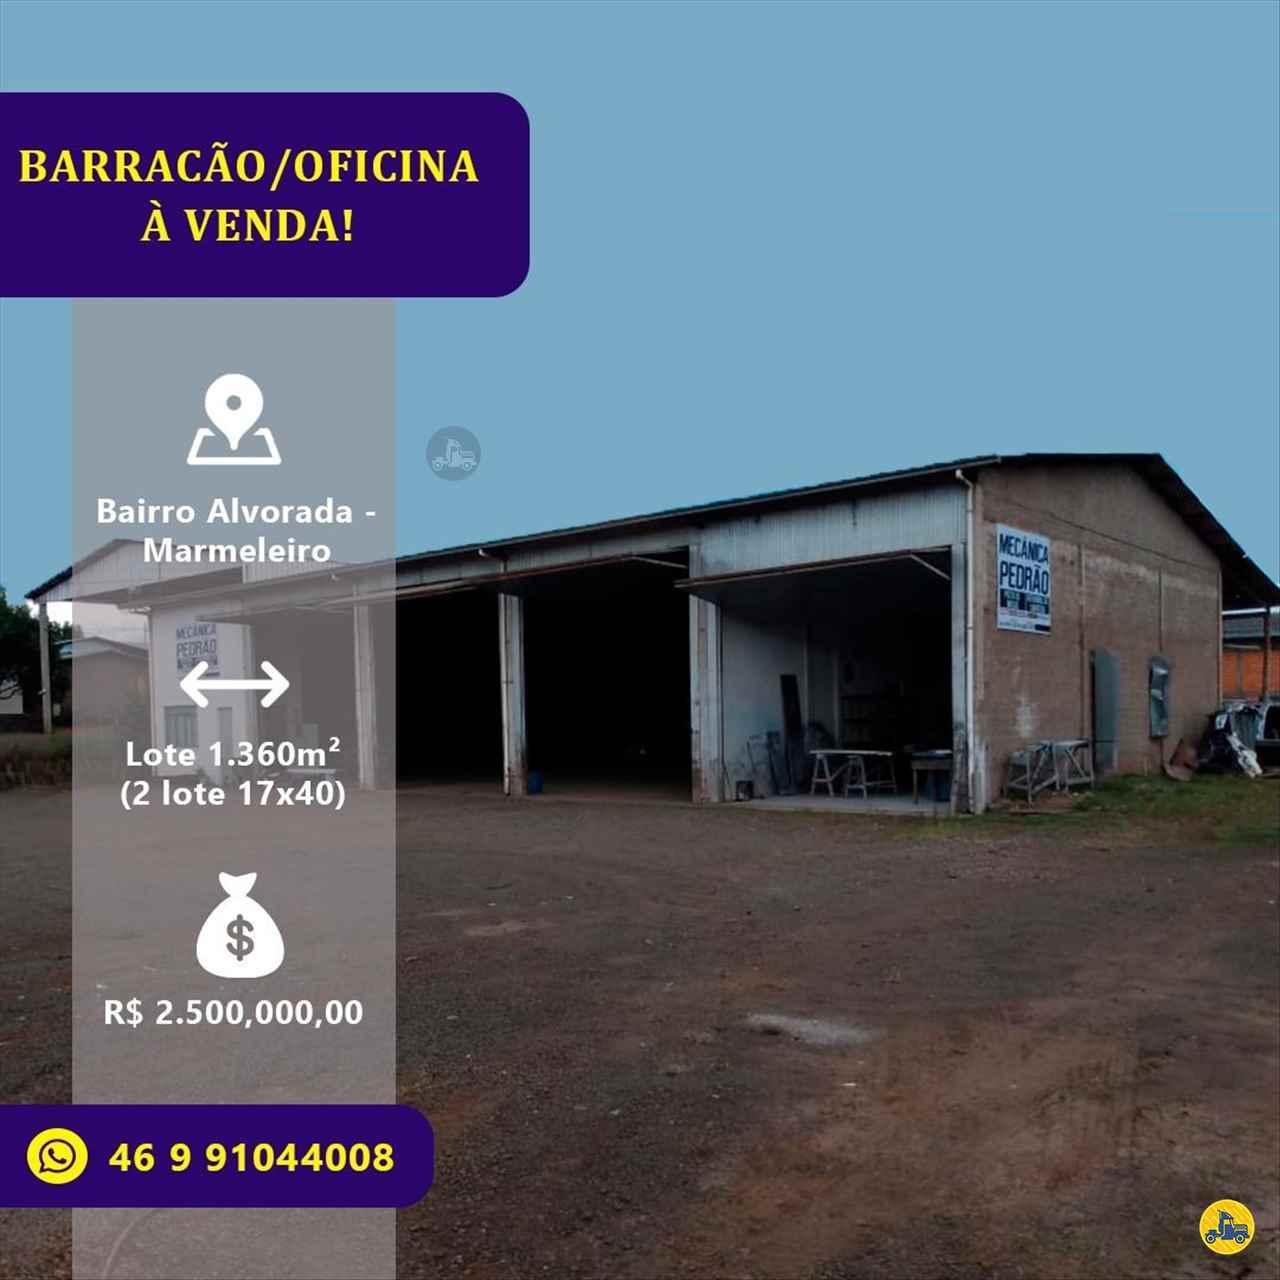 BARRACAO - VENDA